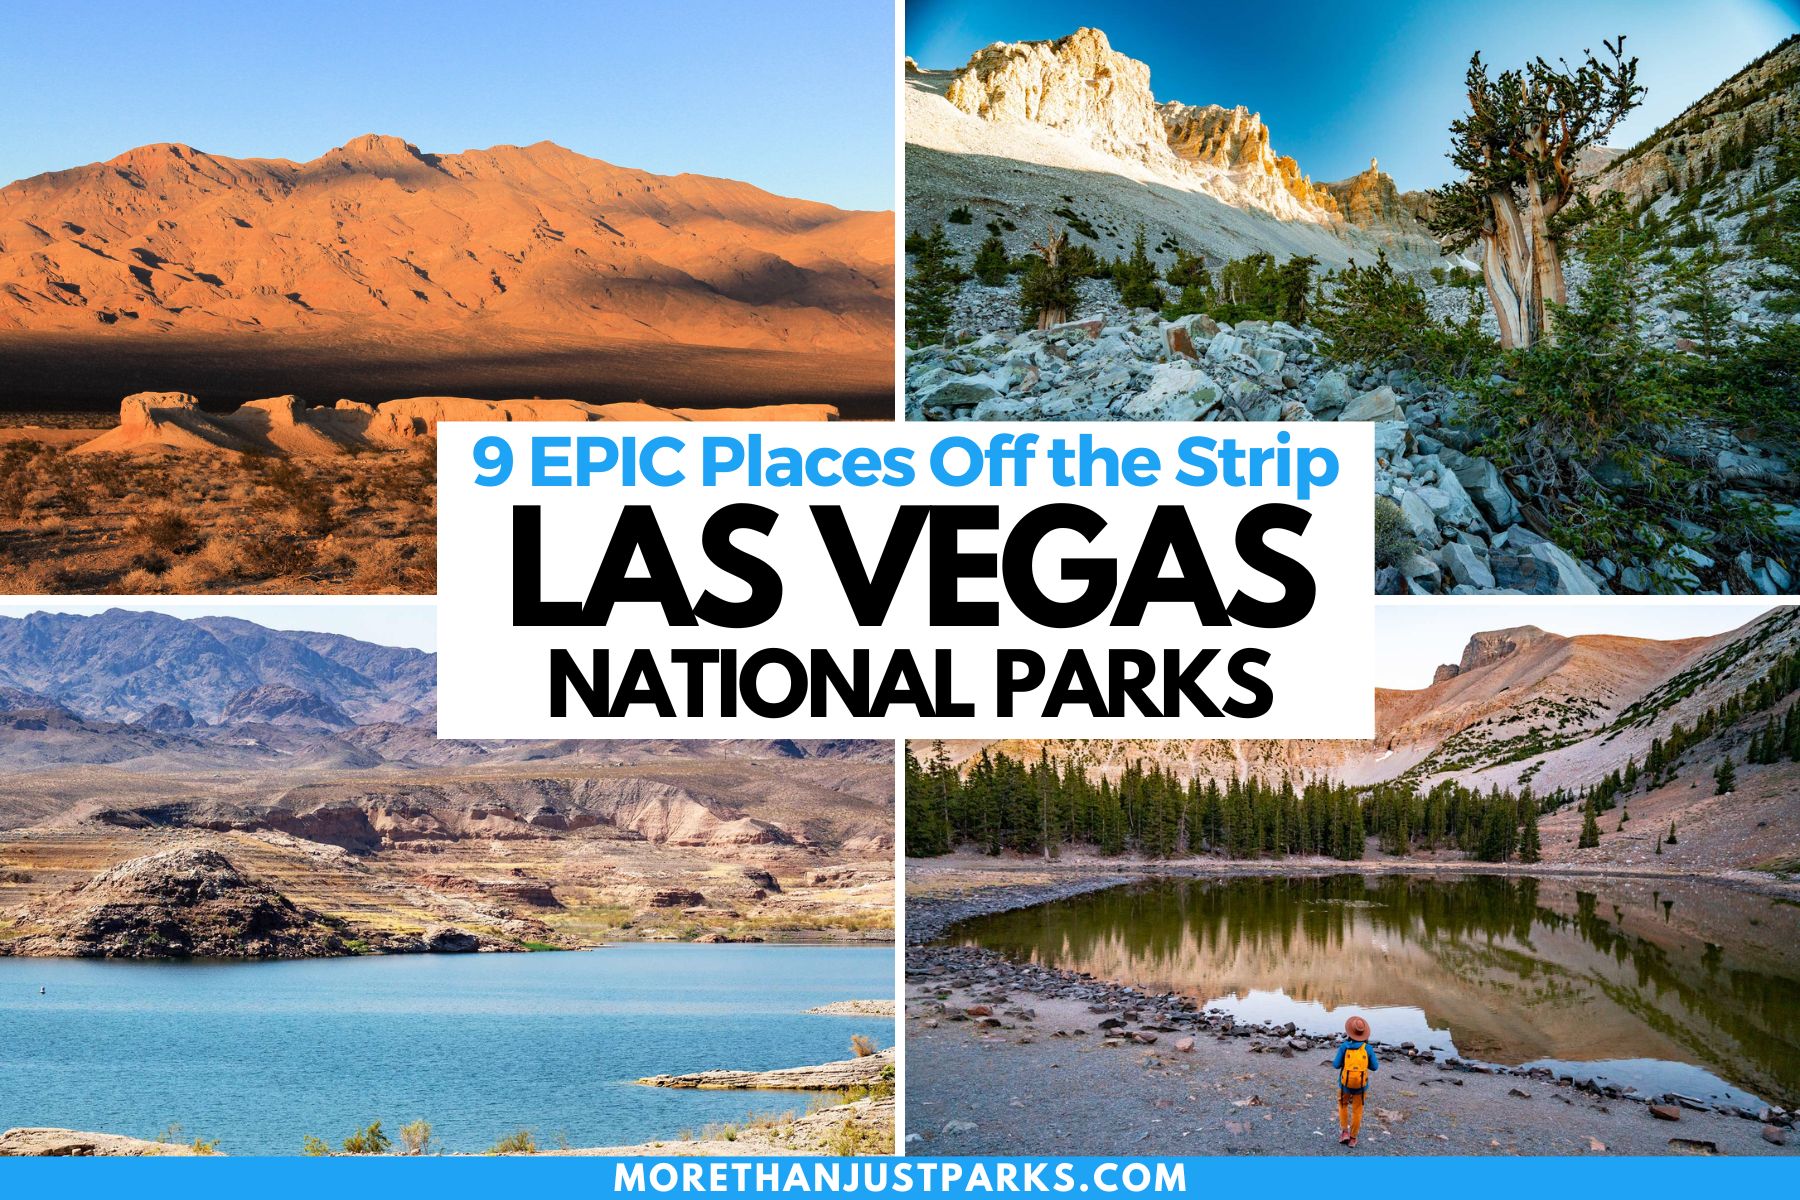 Las Vegas National Parks